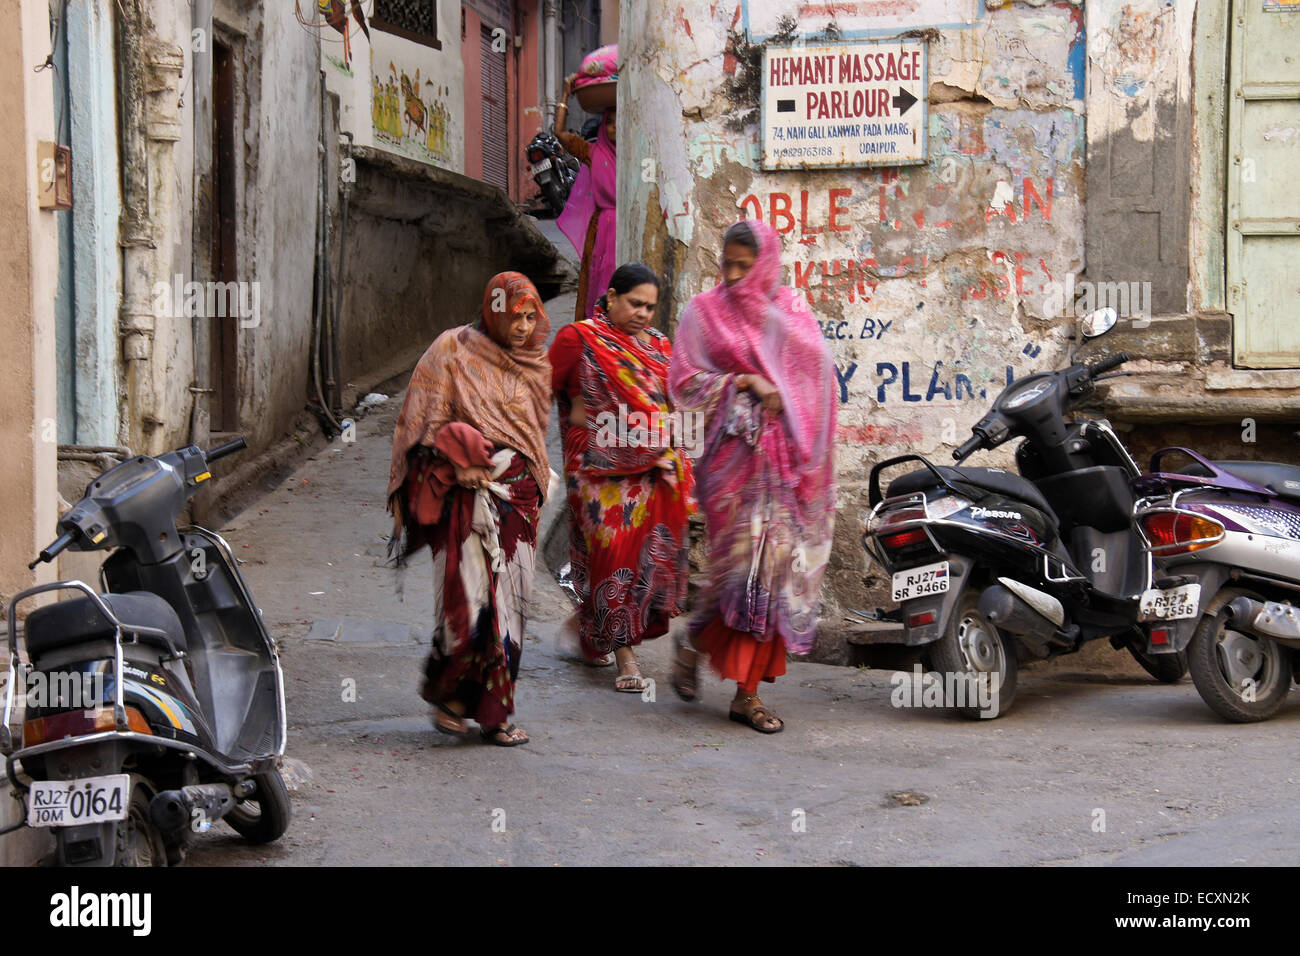 La Marche des femmes sur la rue dans le vieux quartier résidentiel, Udaipur, Rajasthan, Inde Banque D'Images